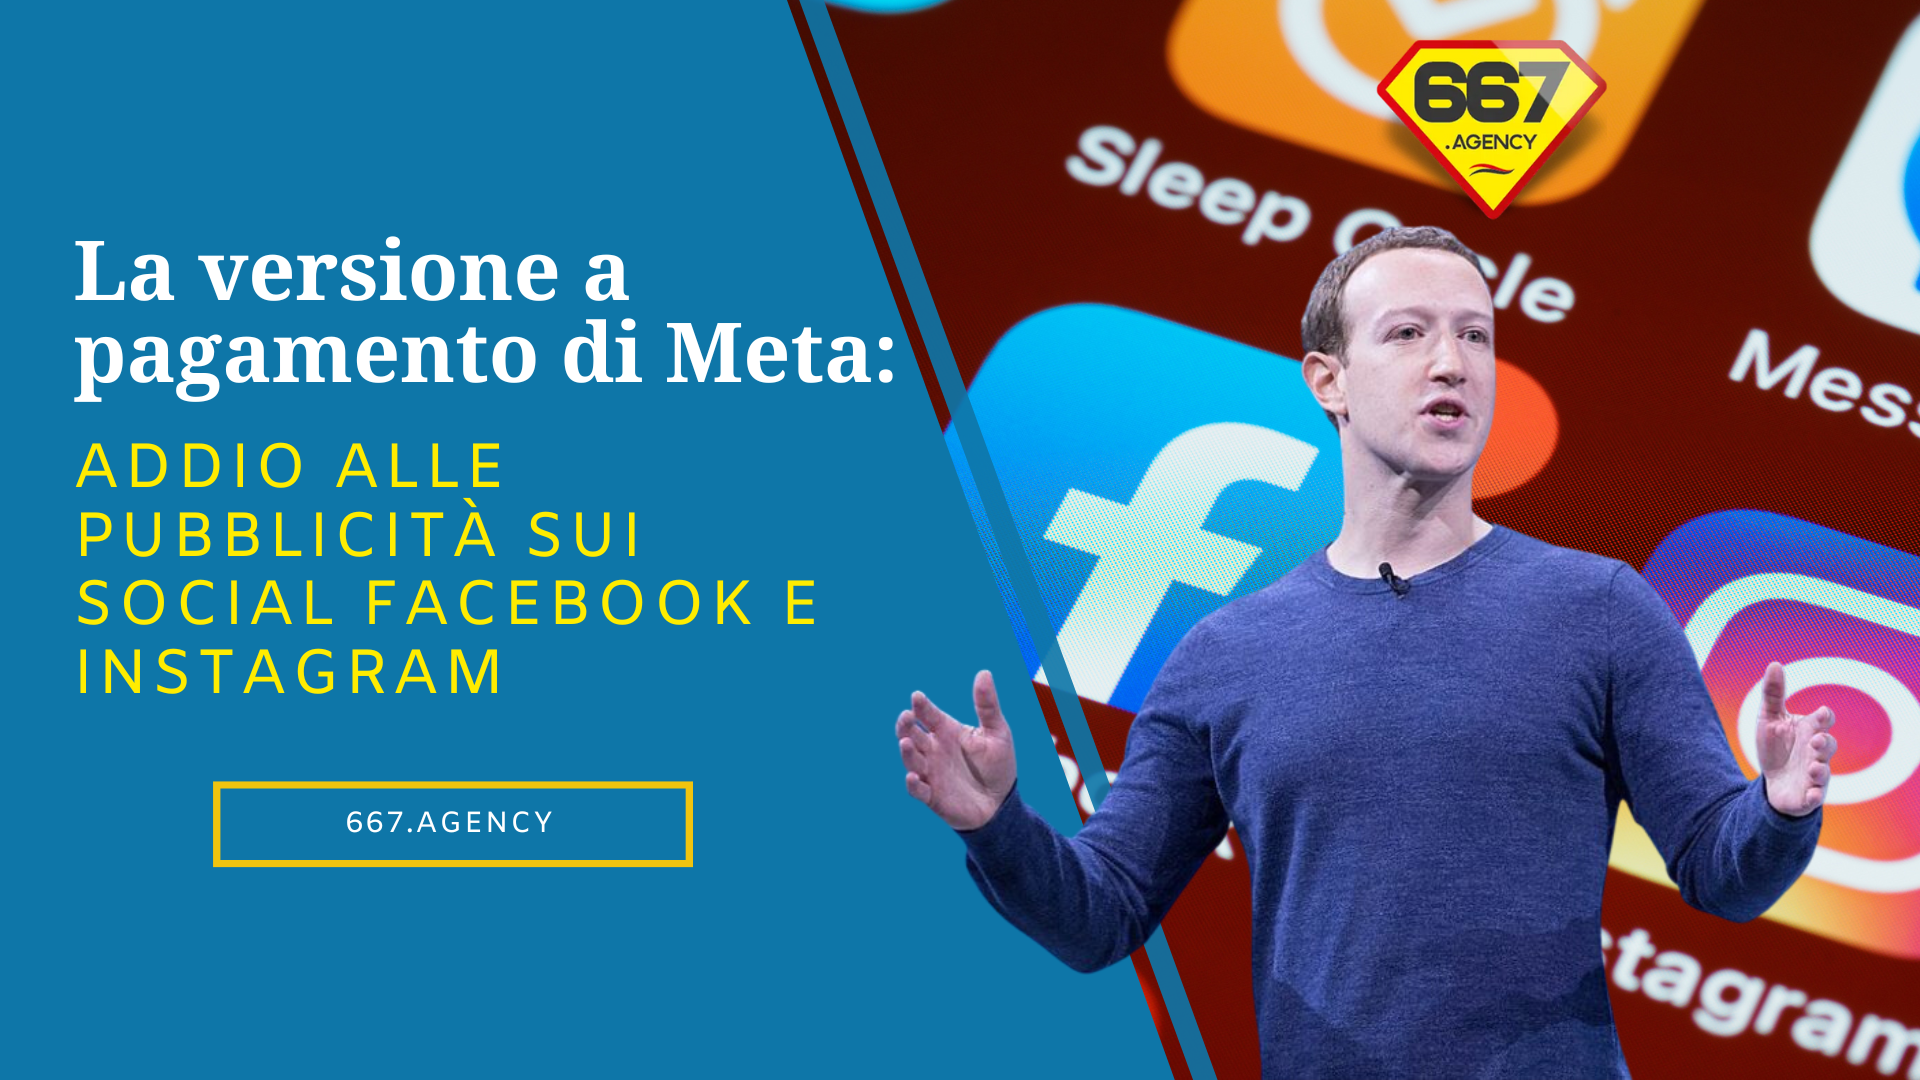 La versione a pagamento di Meta: addio alle pubblicità sui social Facebook e Instagram